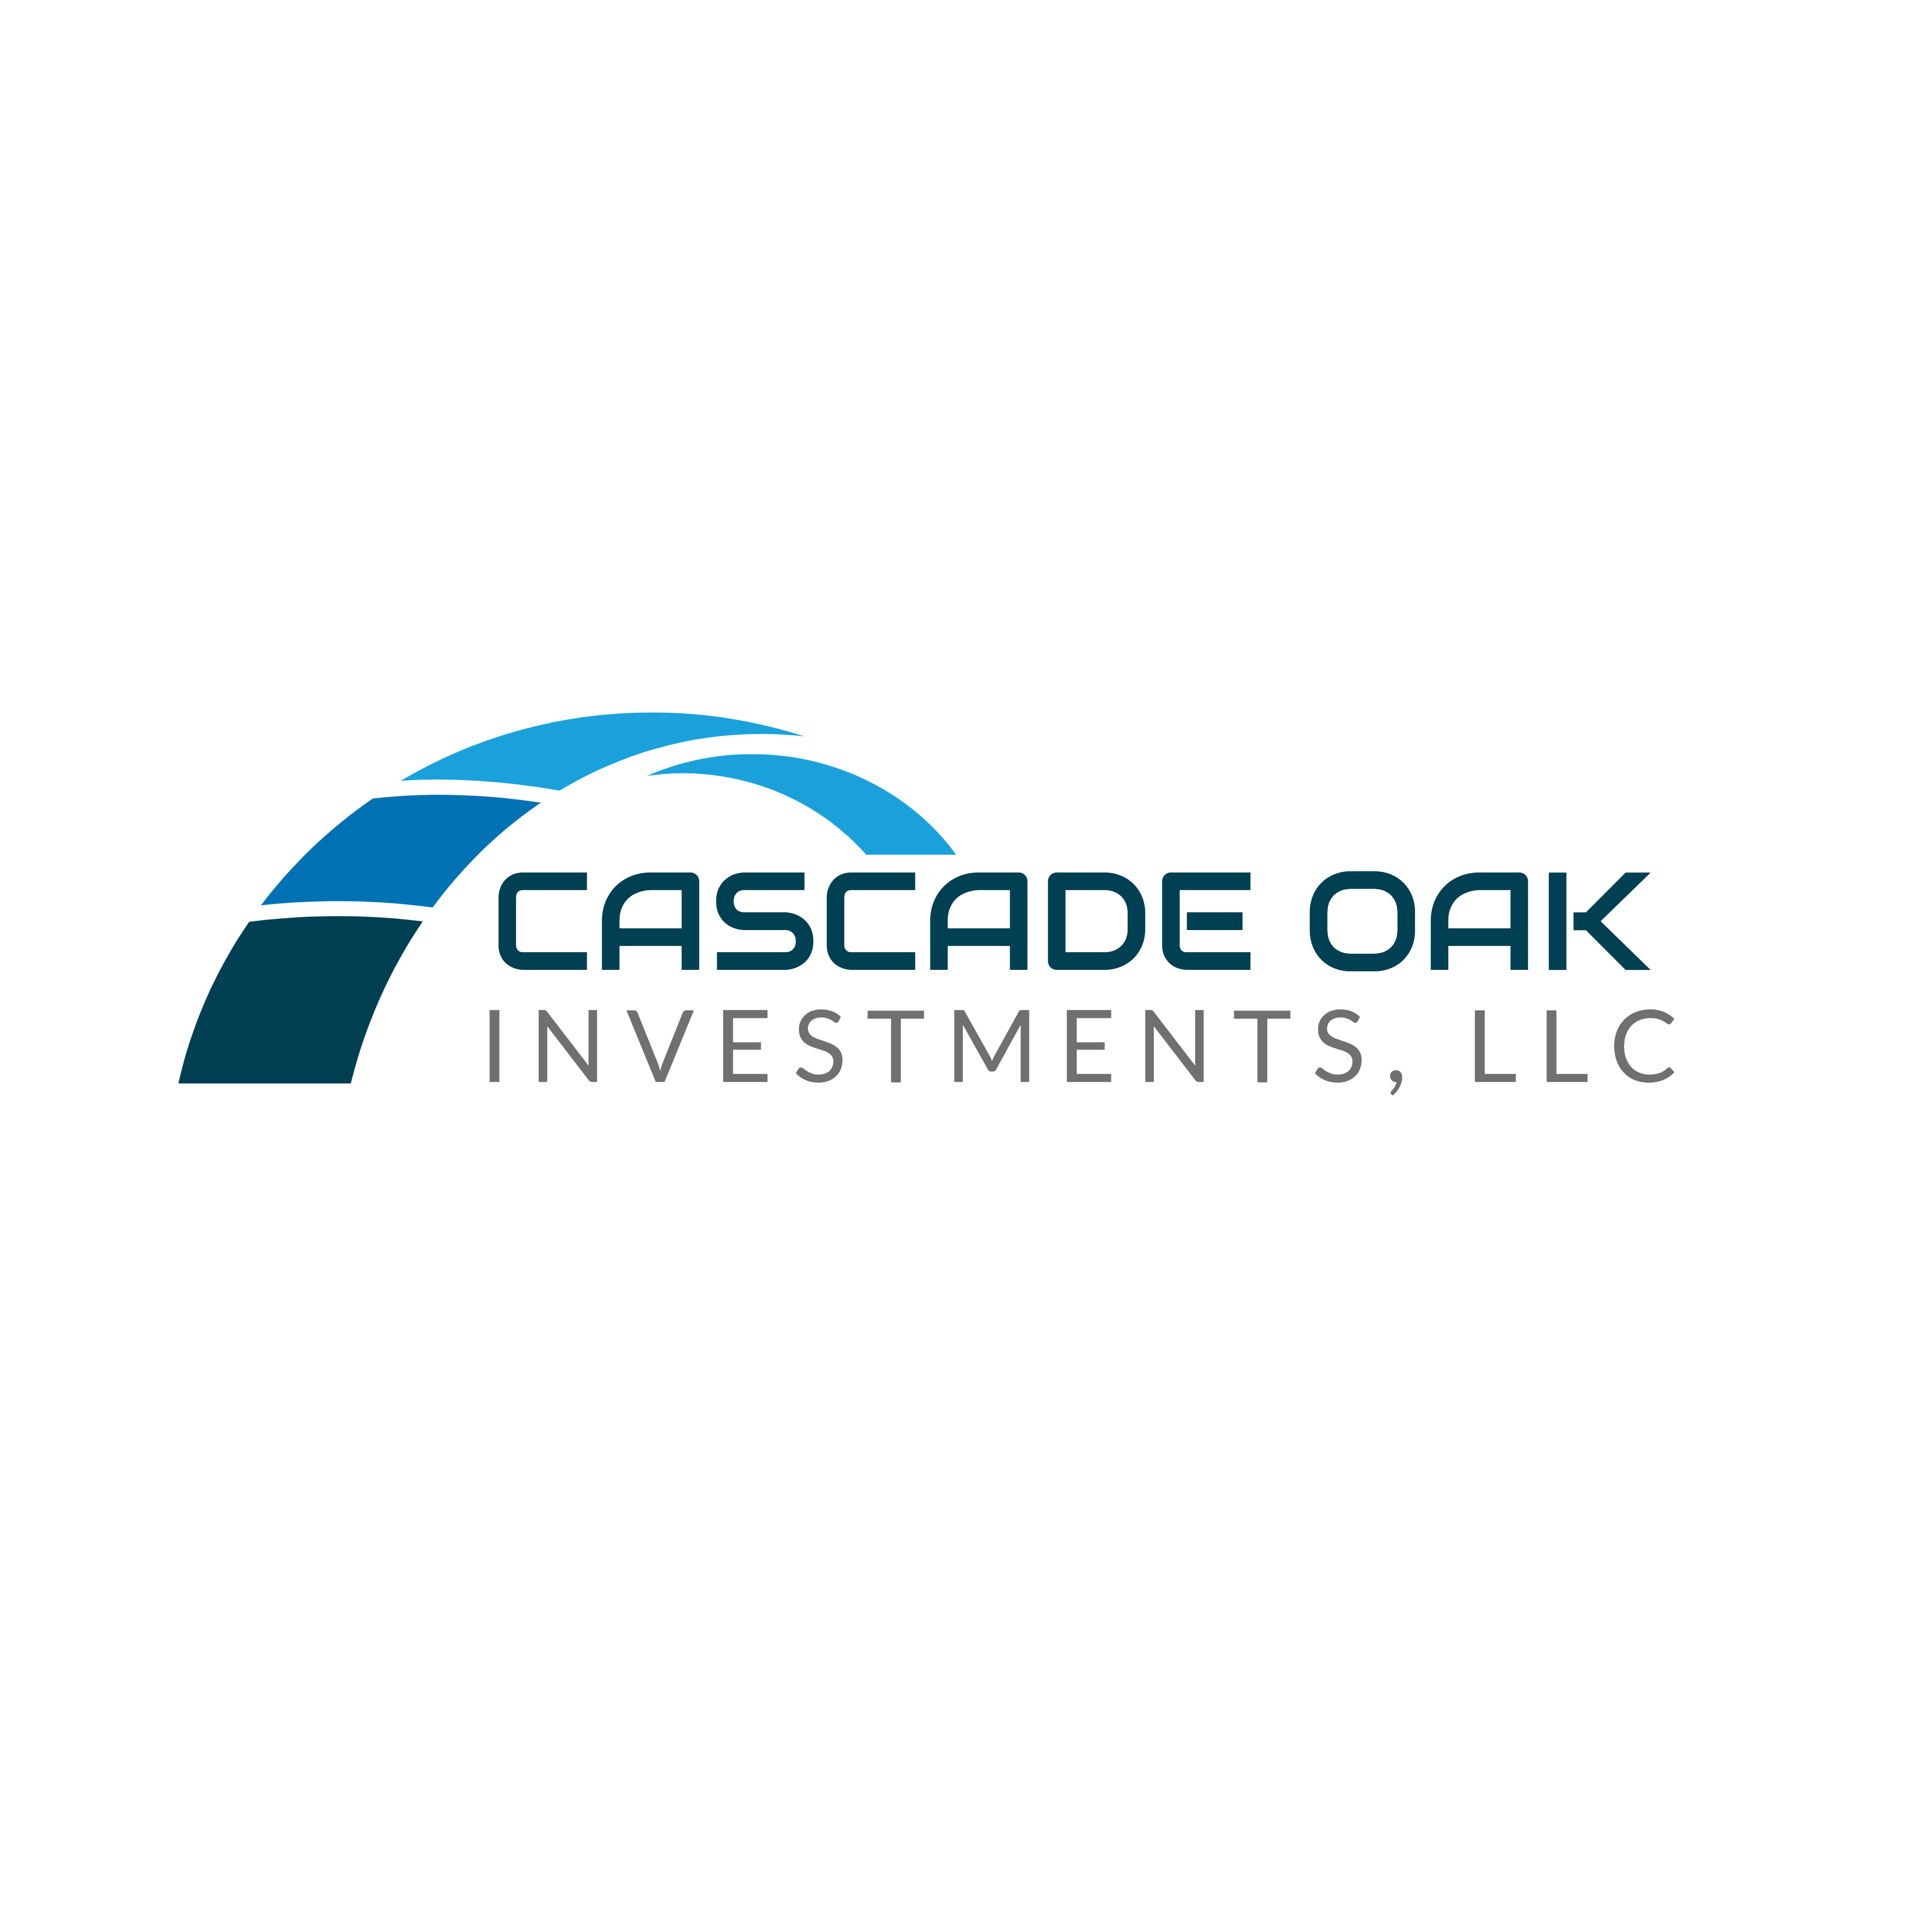 Cascade Oak Investments, LLC